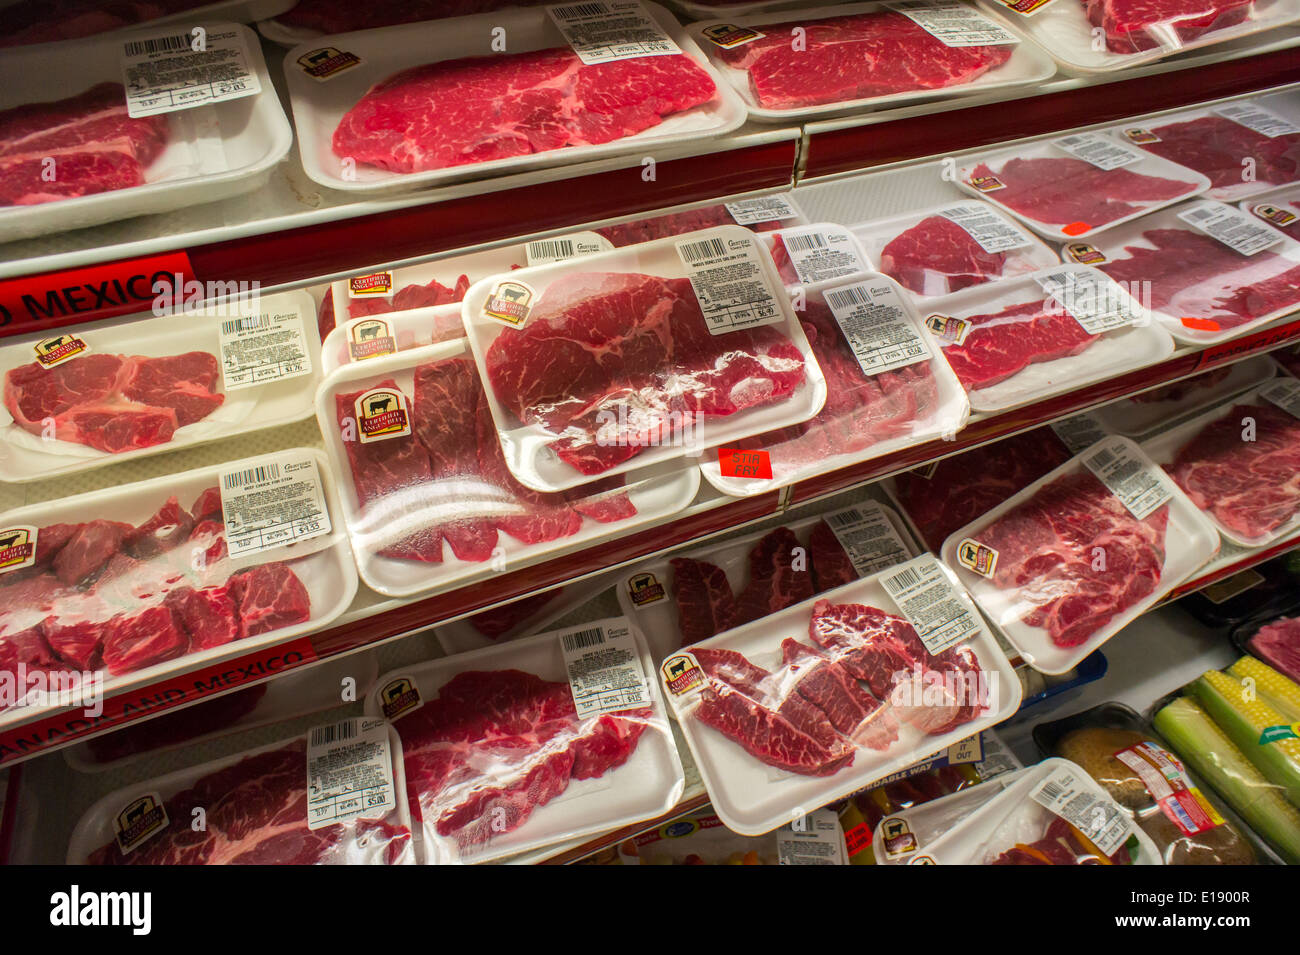 563 fotos de stock e banco de imagens de Meat Shelf Supermarket